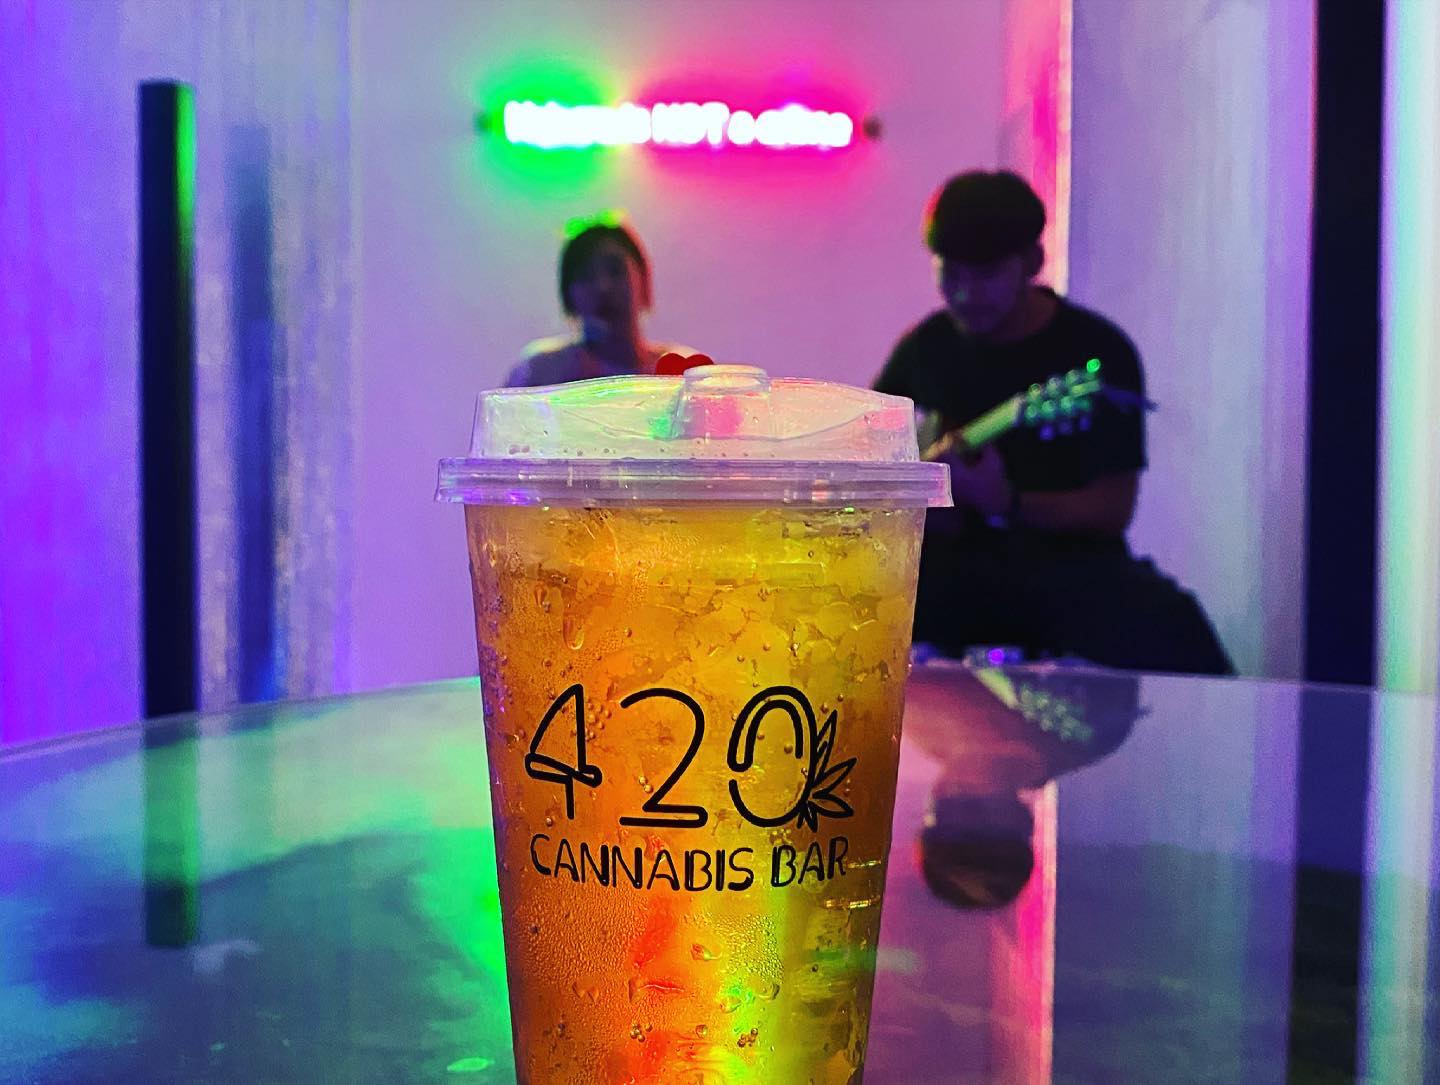 Photo: 420 Cannabis Bar Bangkok / Facebook